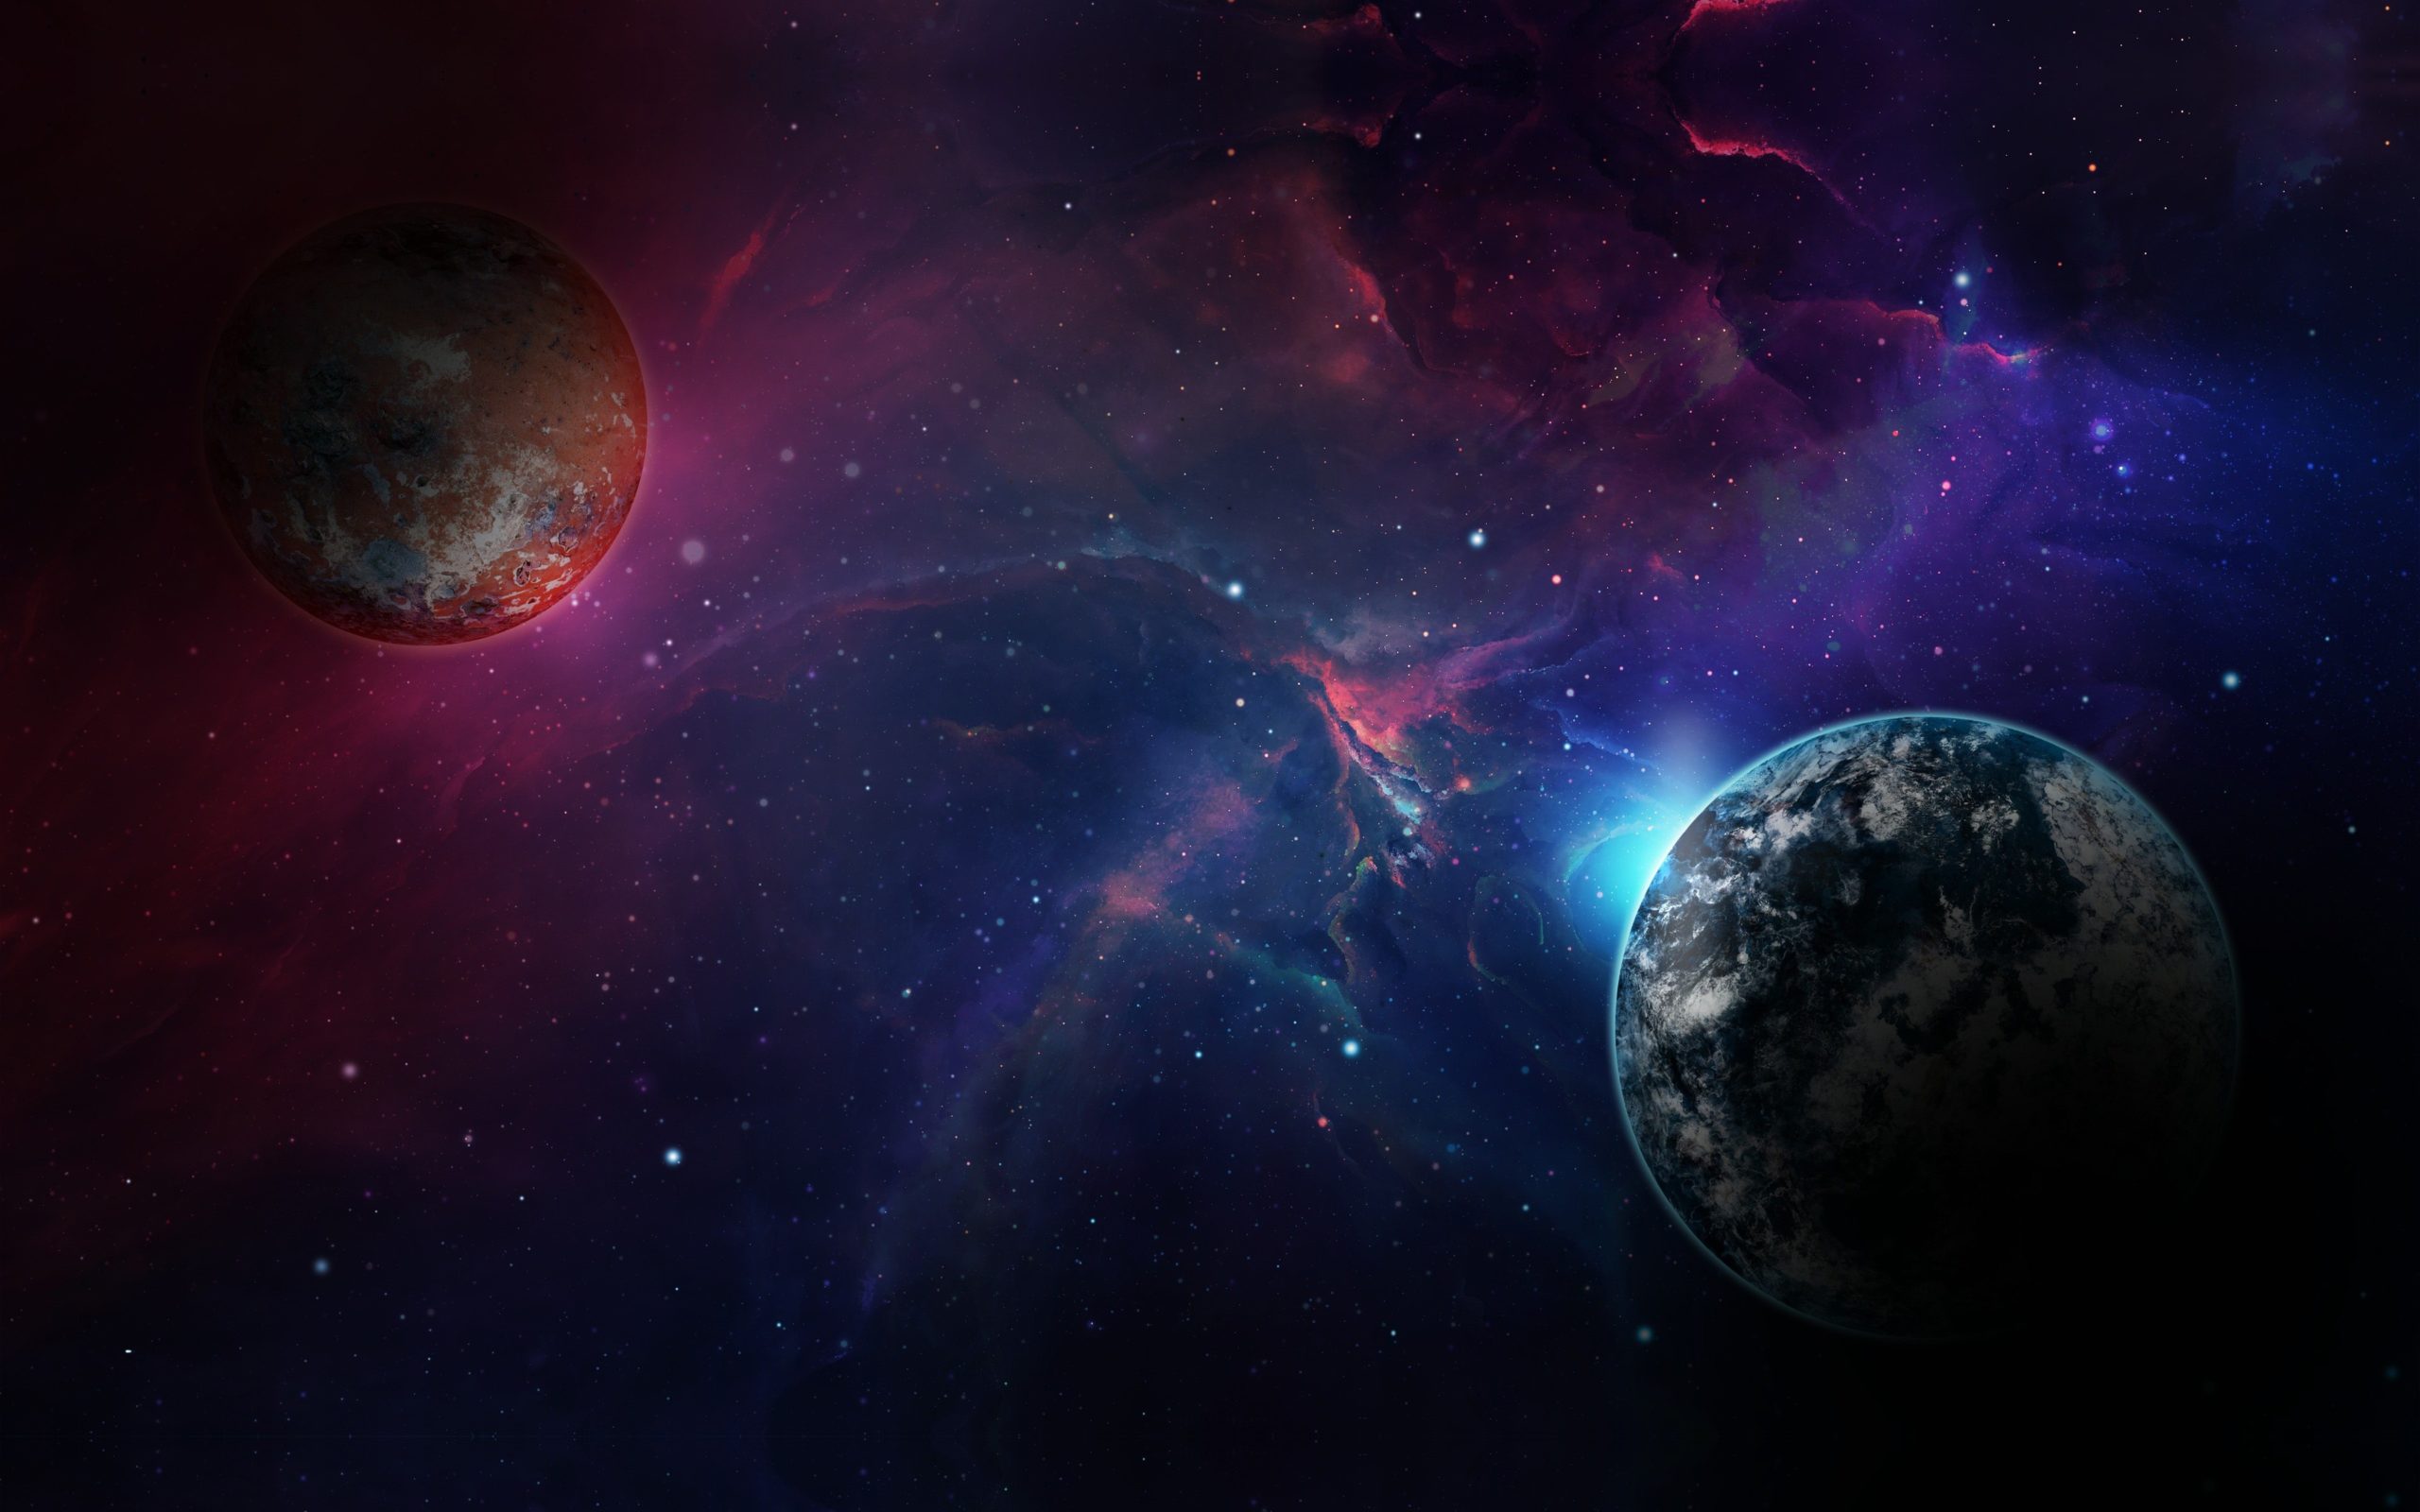 2019_Planetary_Nebula_Clouds_4K_Universe_3840x2400